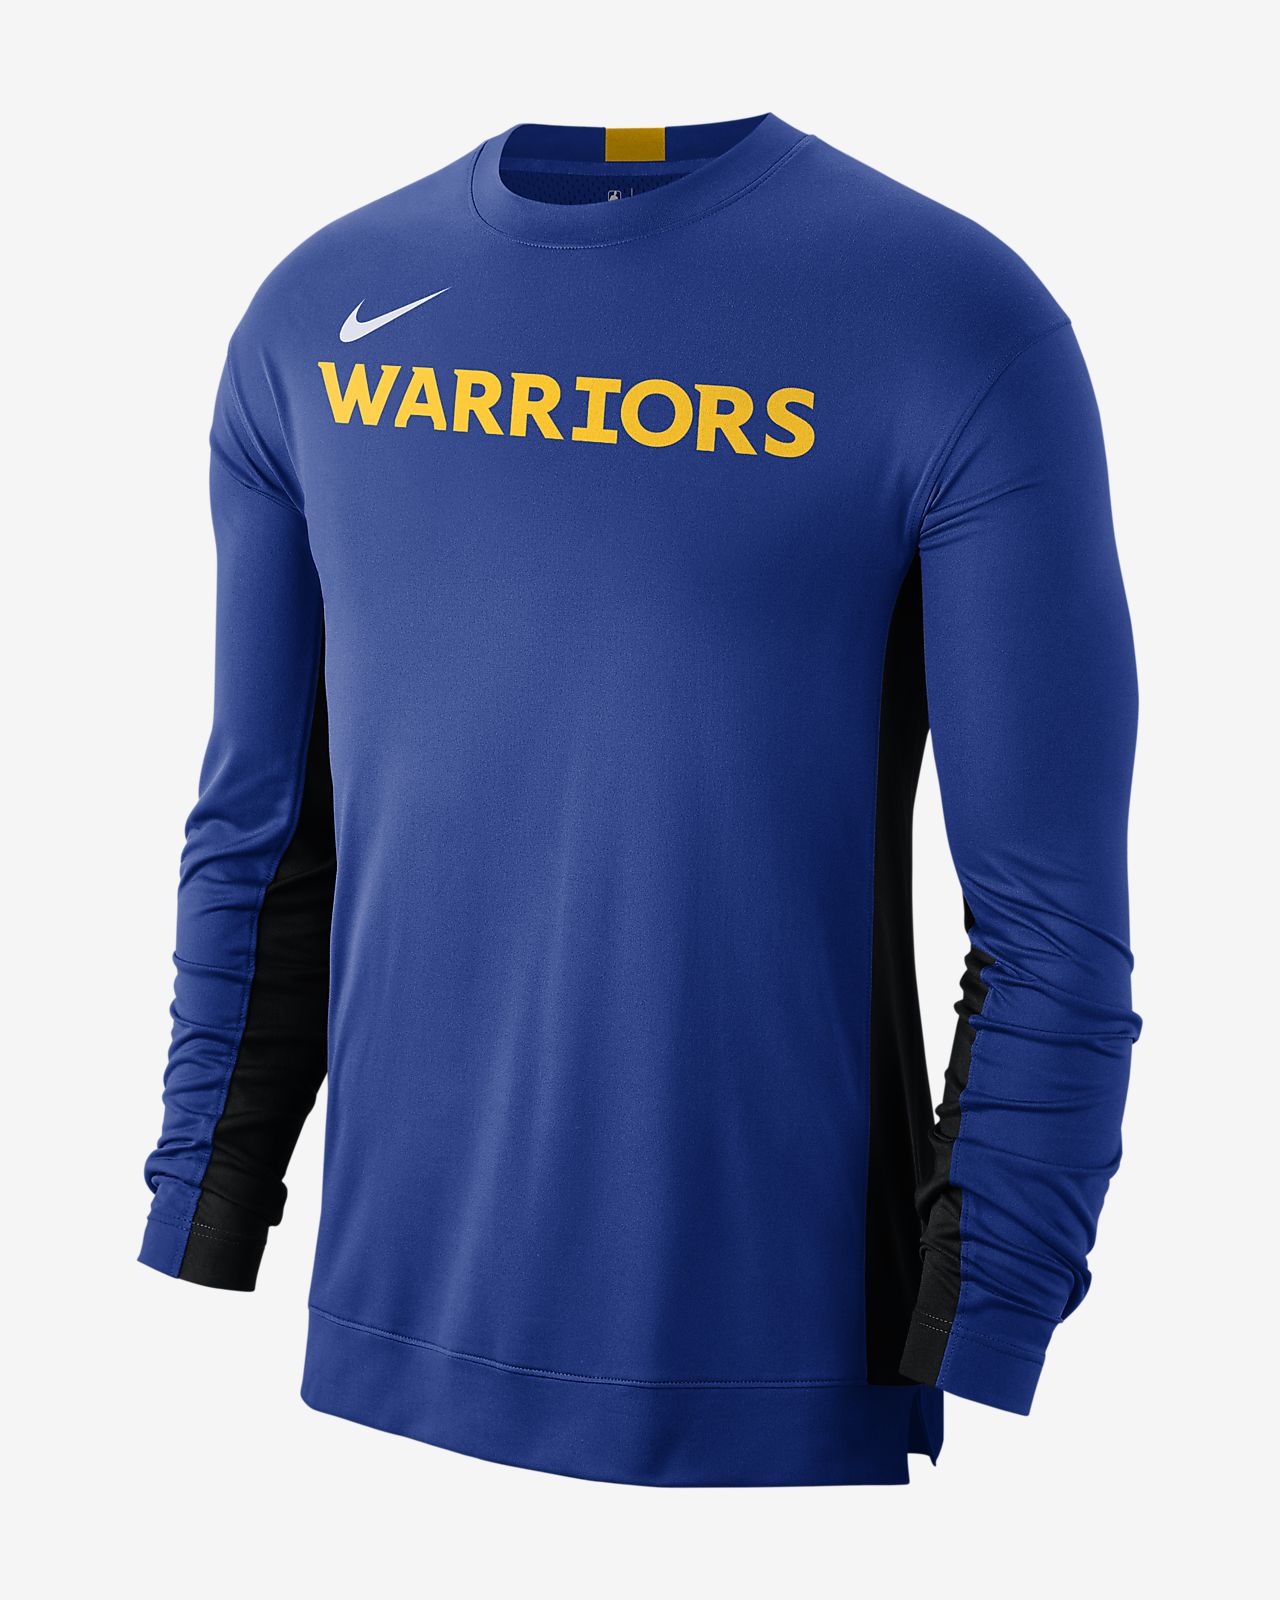 golden state warriors training shirt